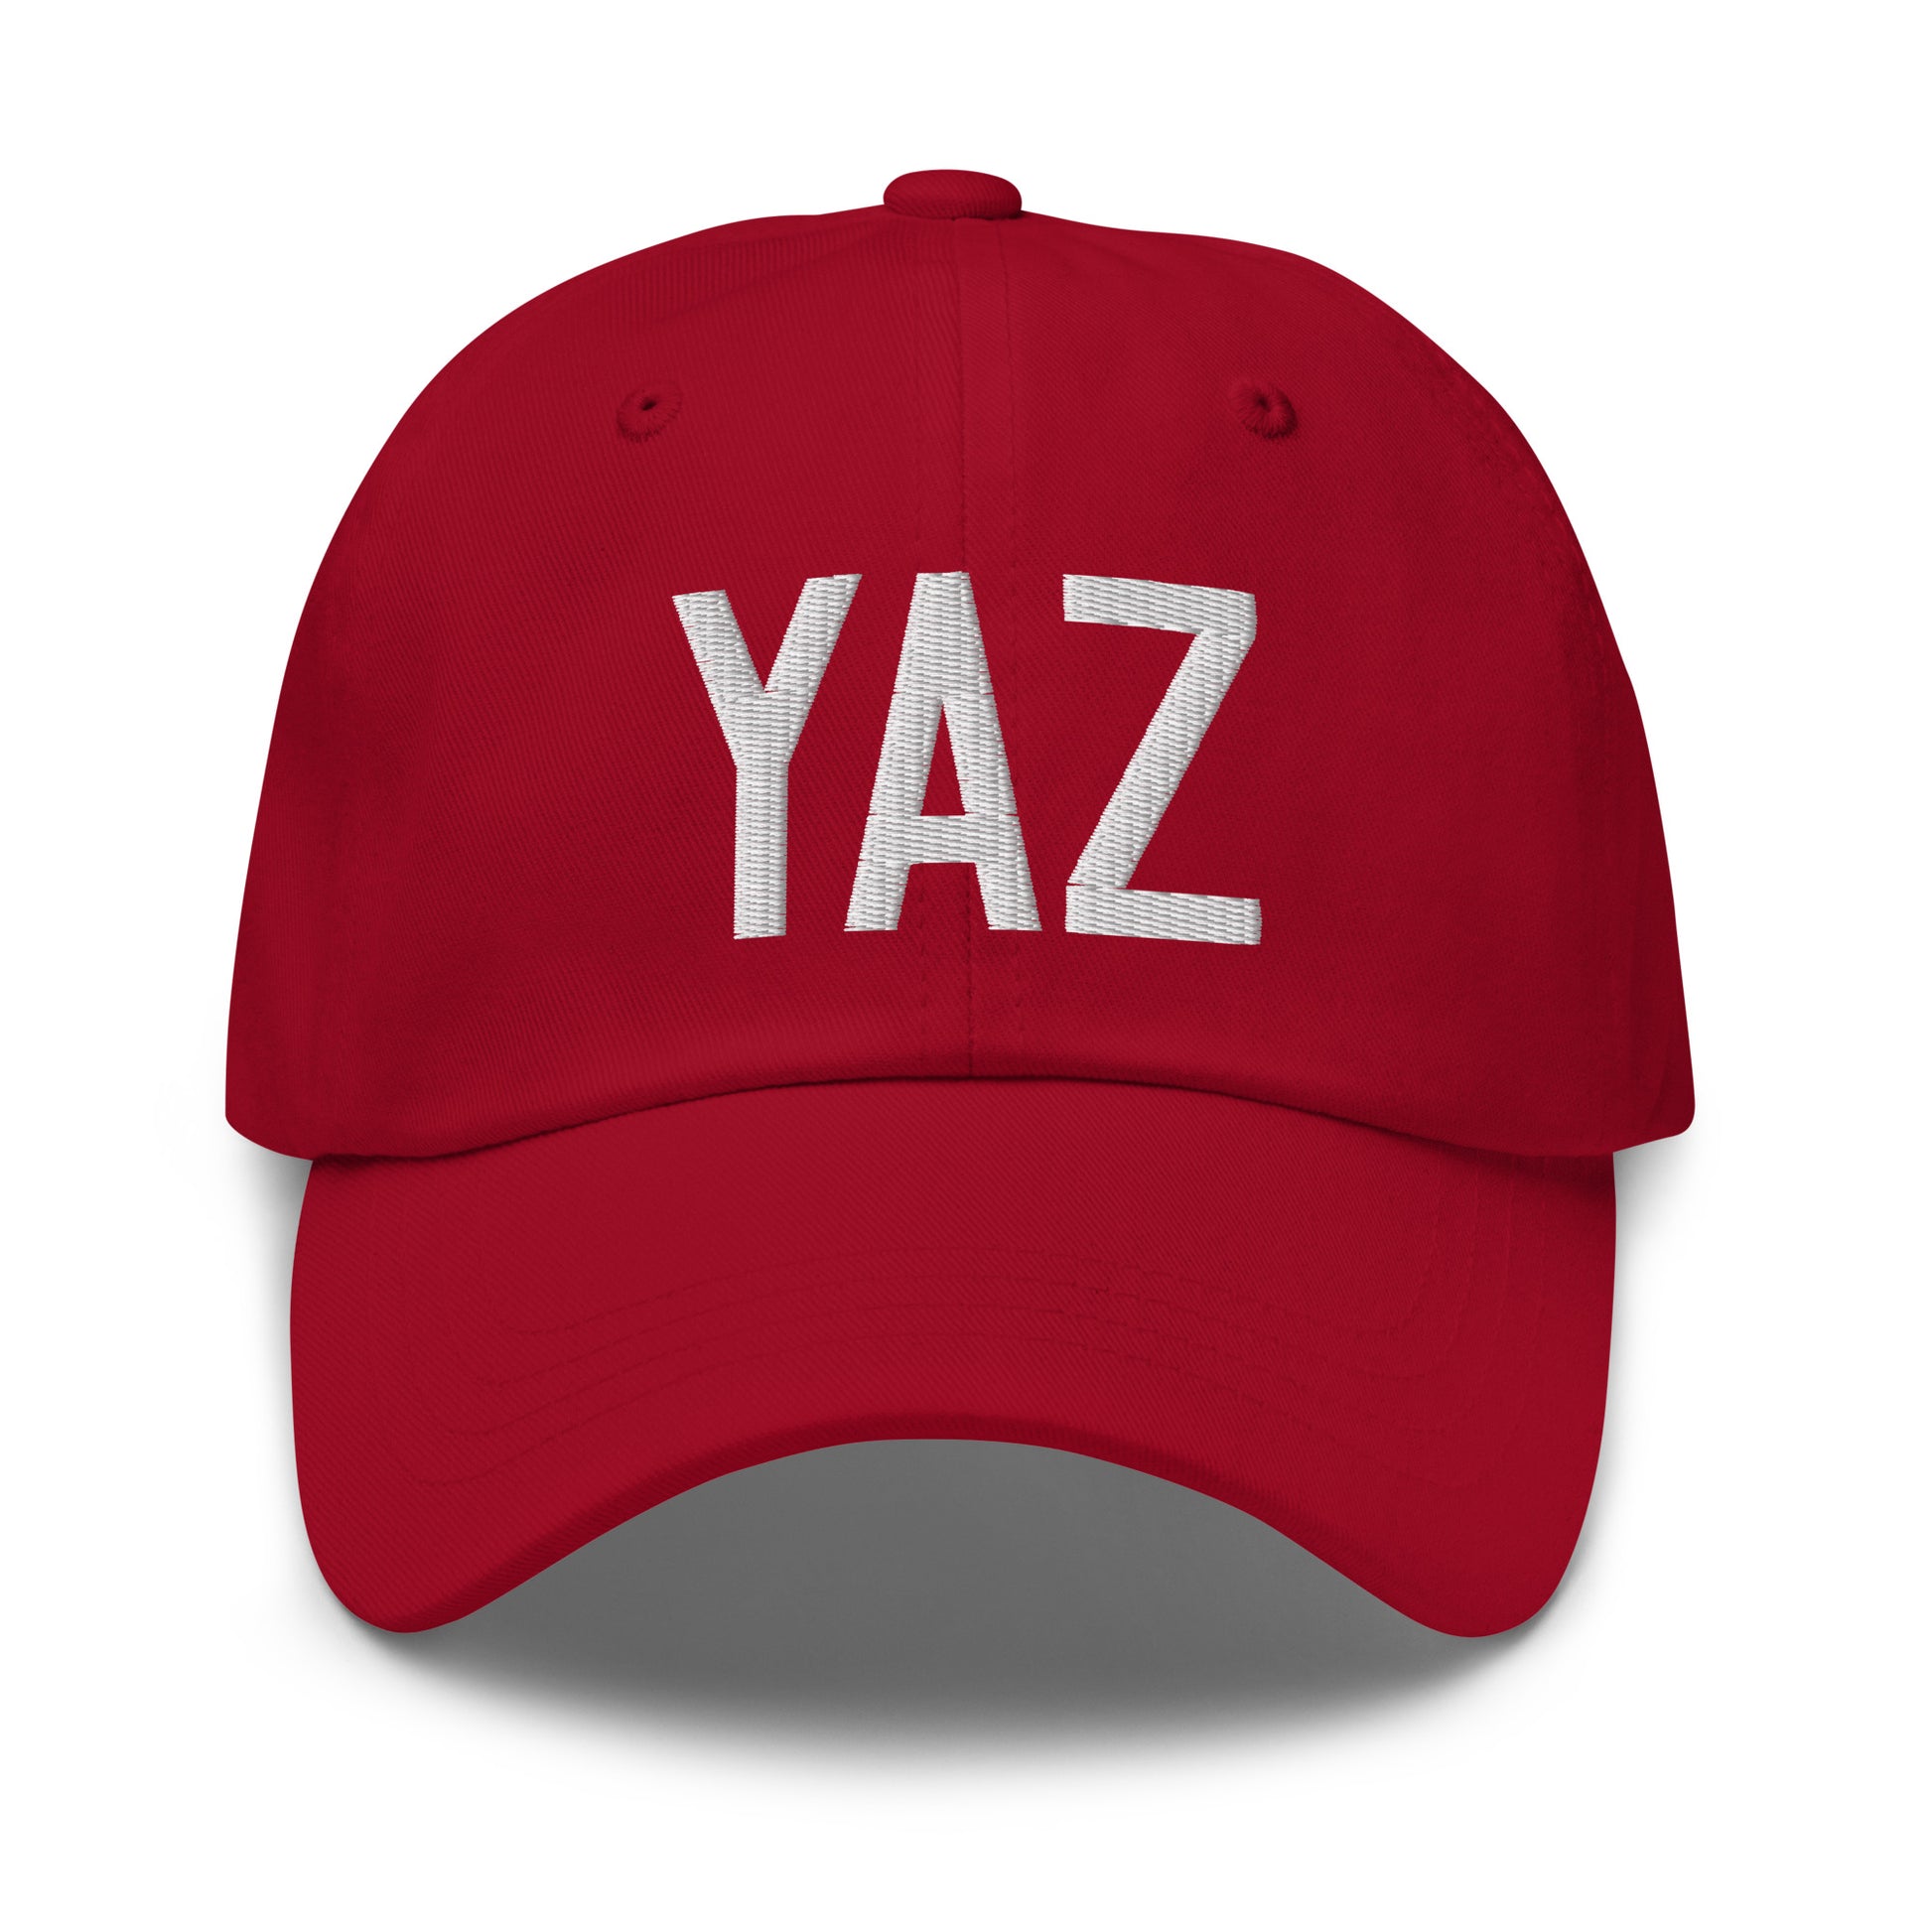 Airport Code Baseball Cap - White • YAZ Tofino • YHM Designs - Image 19